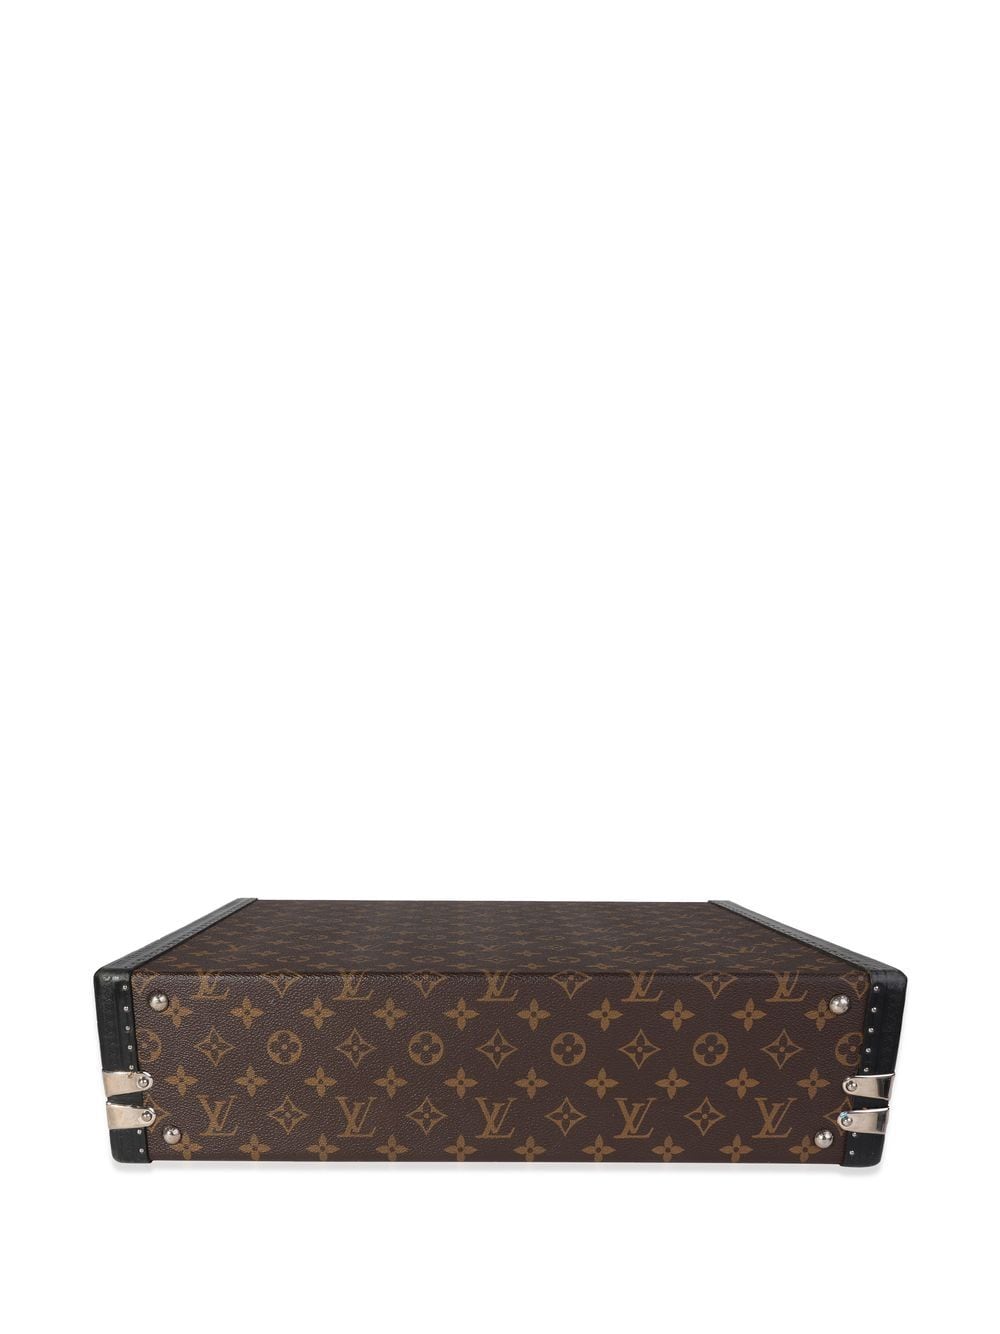 Louis Vuitton Monogram Macassar President Briefcase, 55% OFF